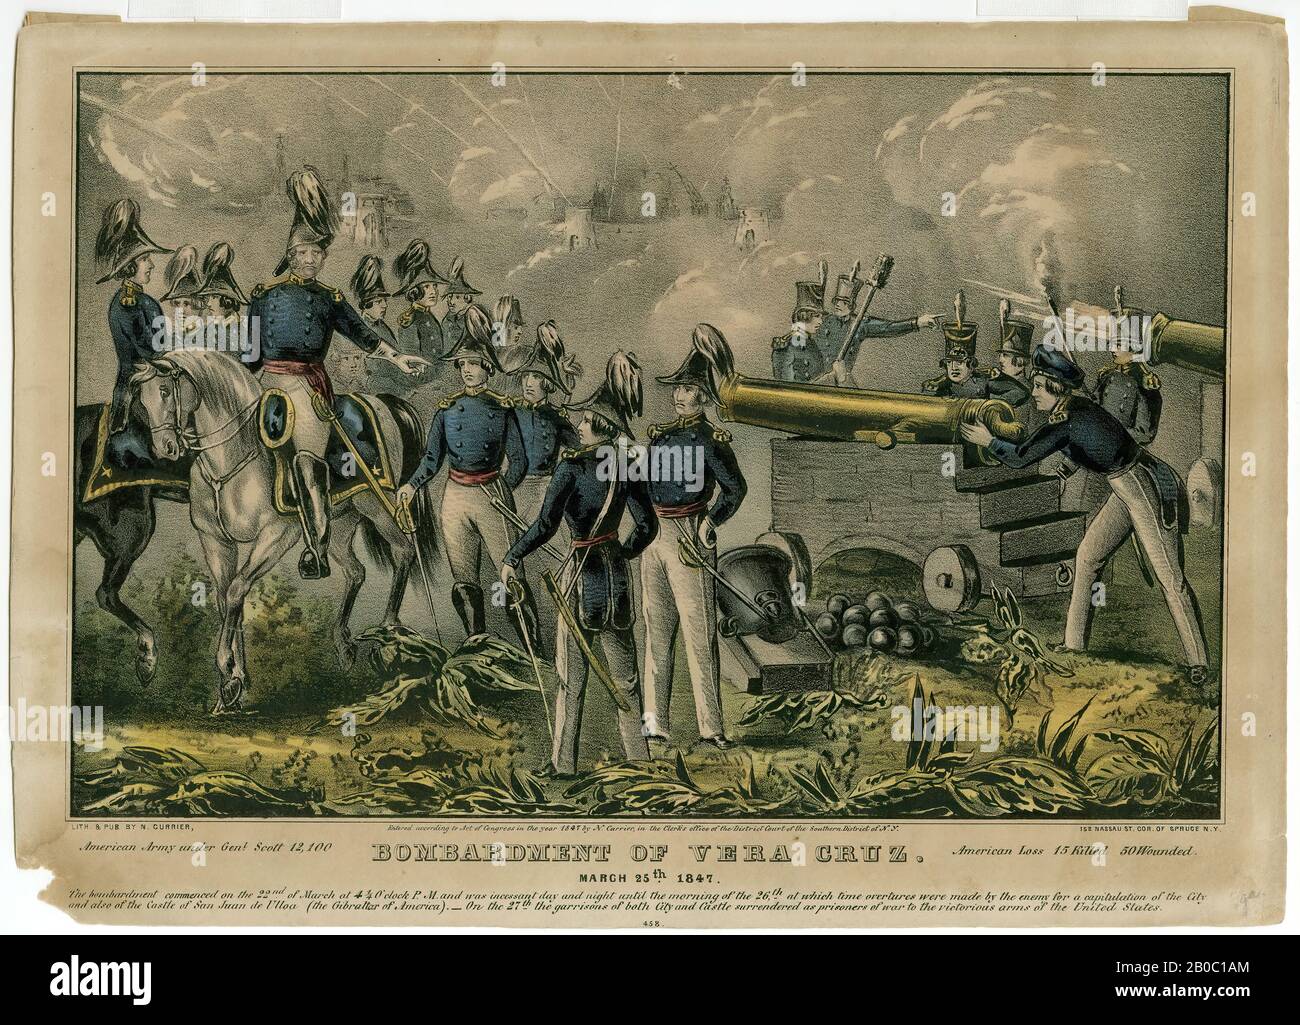 Cameron, fait partie d'une collection de tirages de guerre Mexico-américain, bombardement de Vera Cruz. 25 mars 1847#458, 1847, lithographie couleur sur papier, 9 15/16 po. X 14 po. (25,24 cm x 35,56 cm Banque D'Images